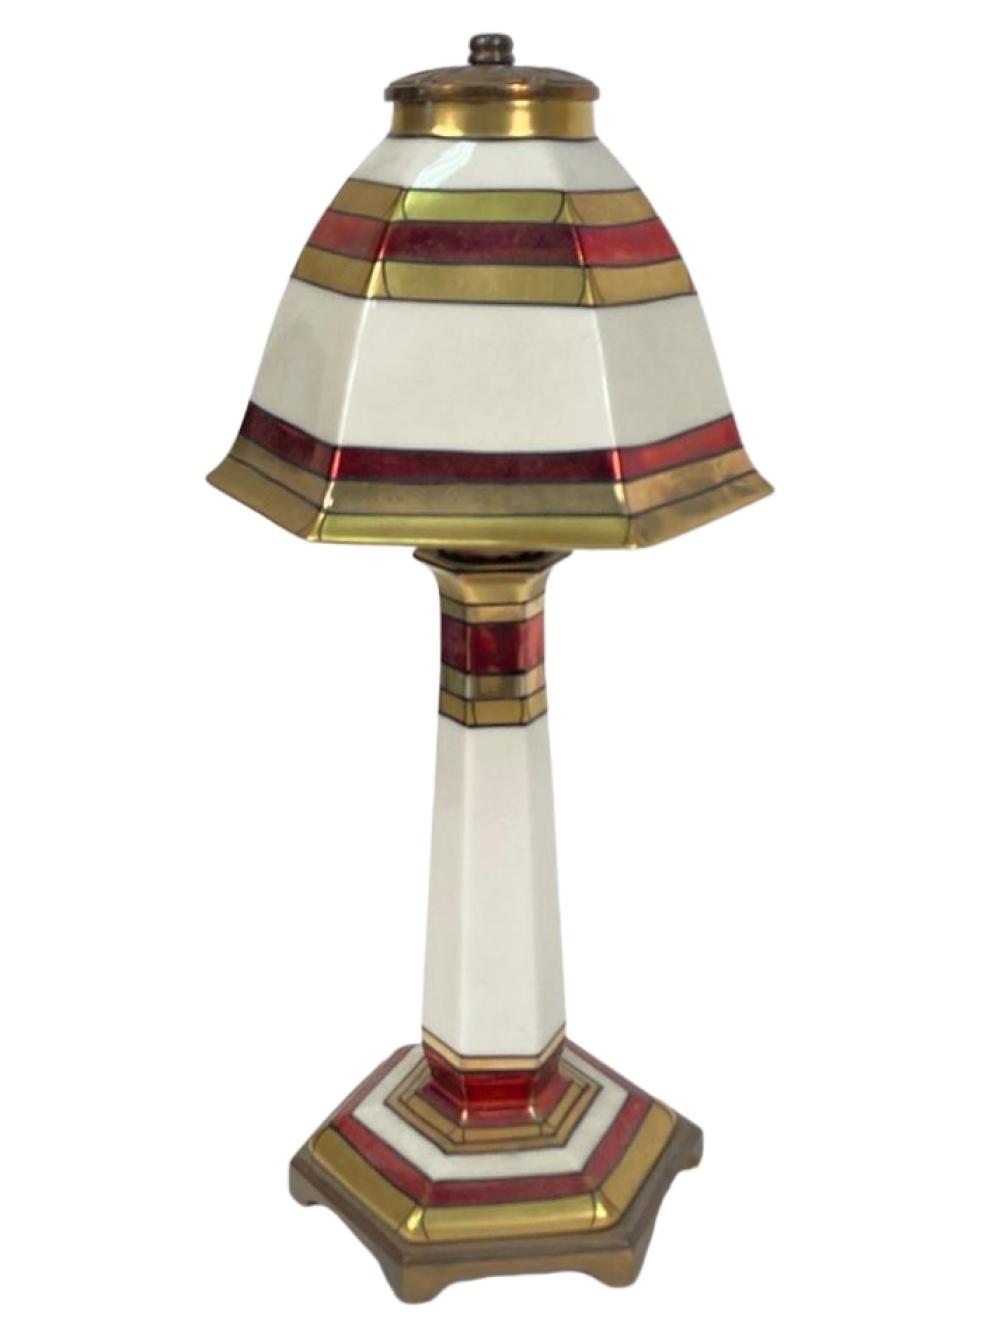 LENOX ART DECO PORCELAIN LAMP WITH